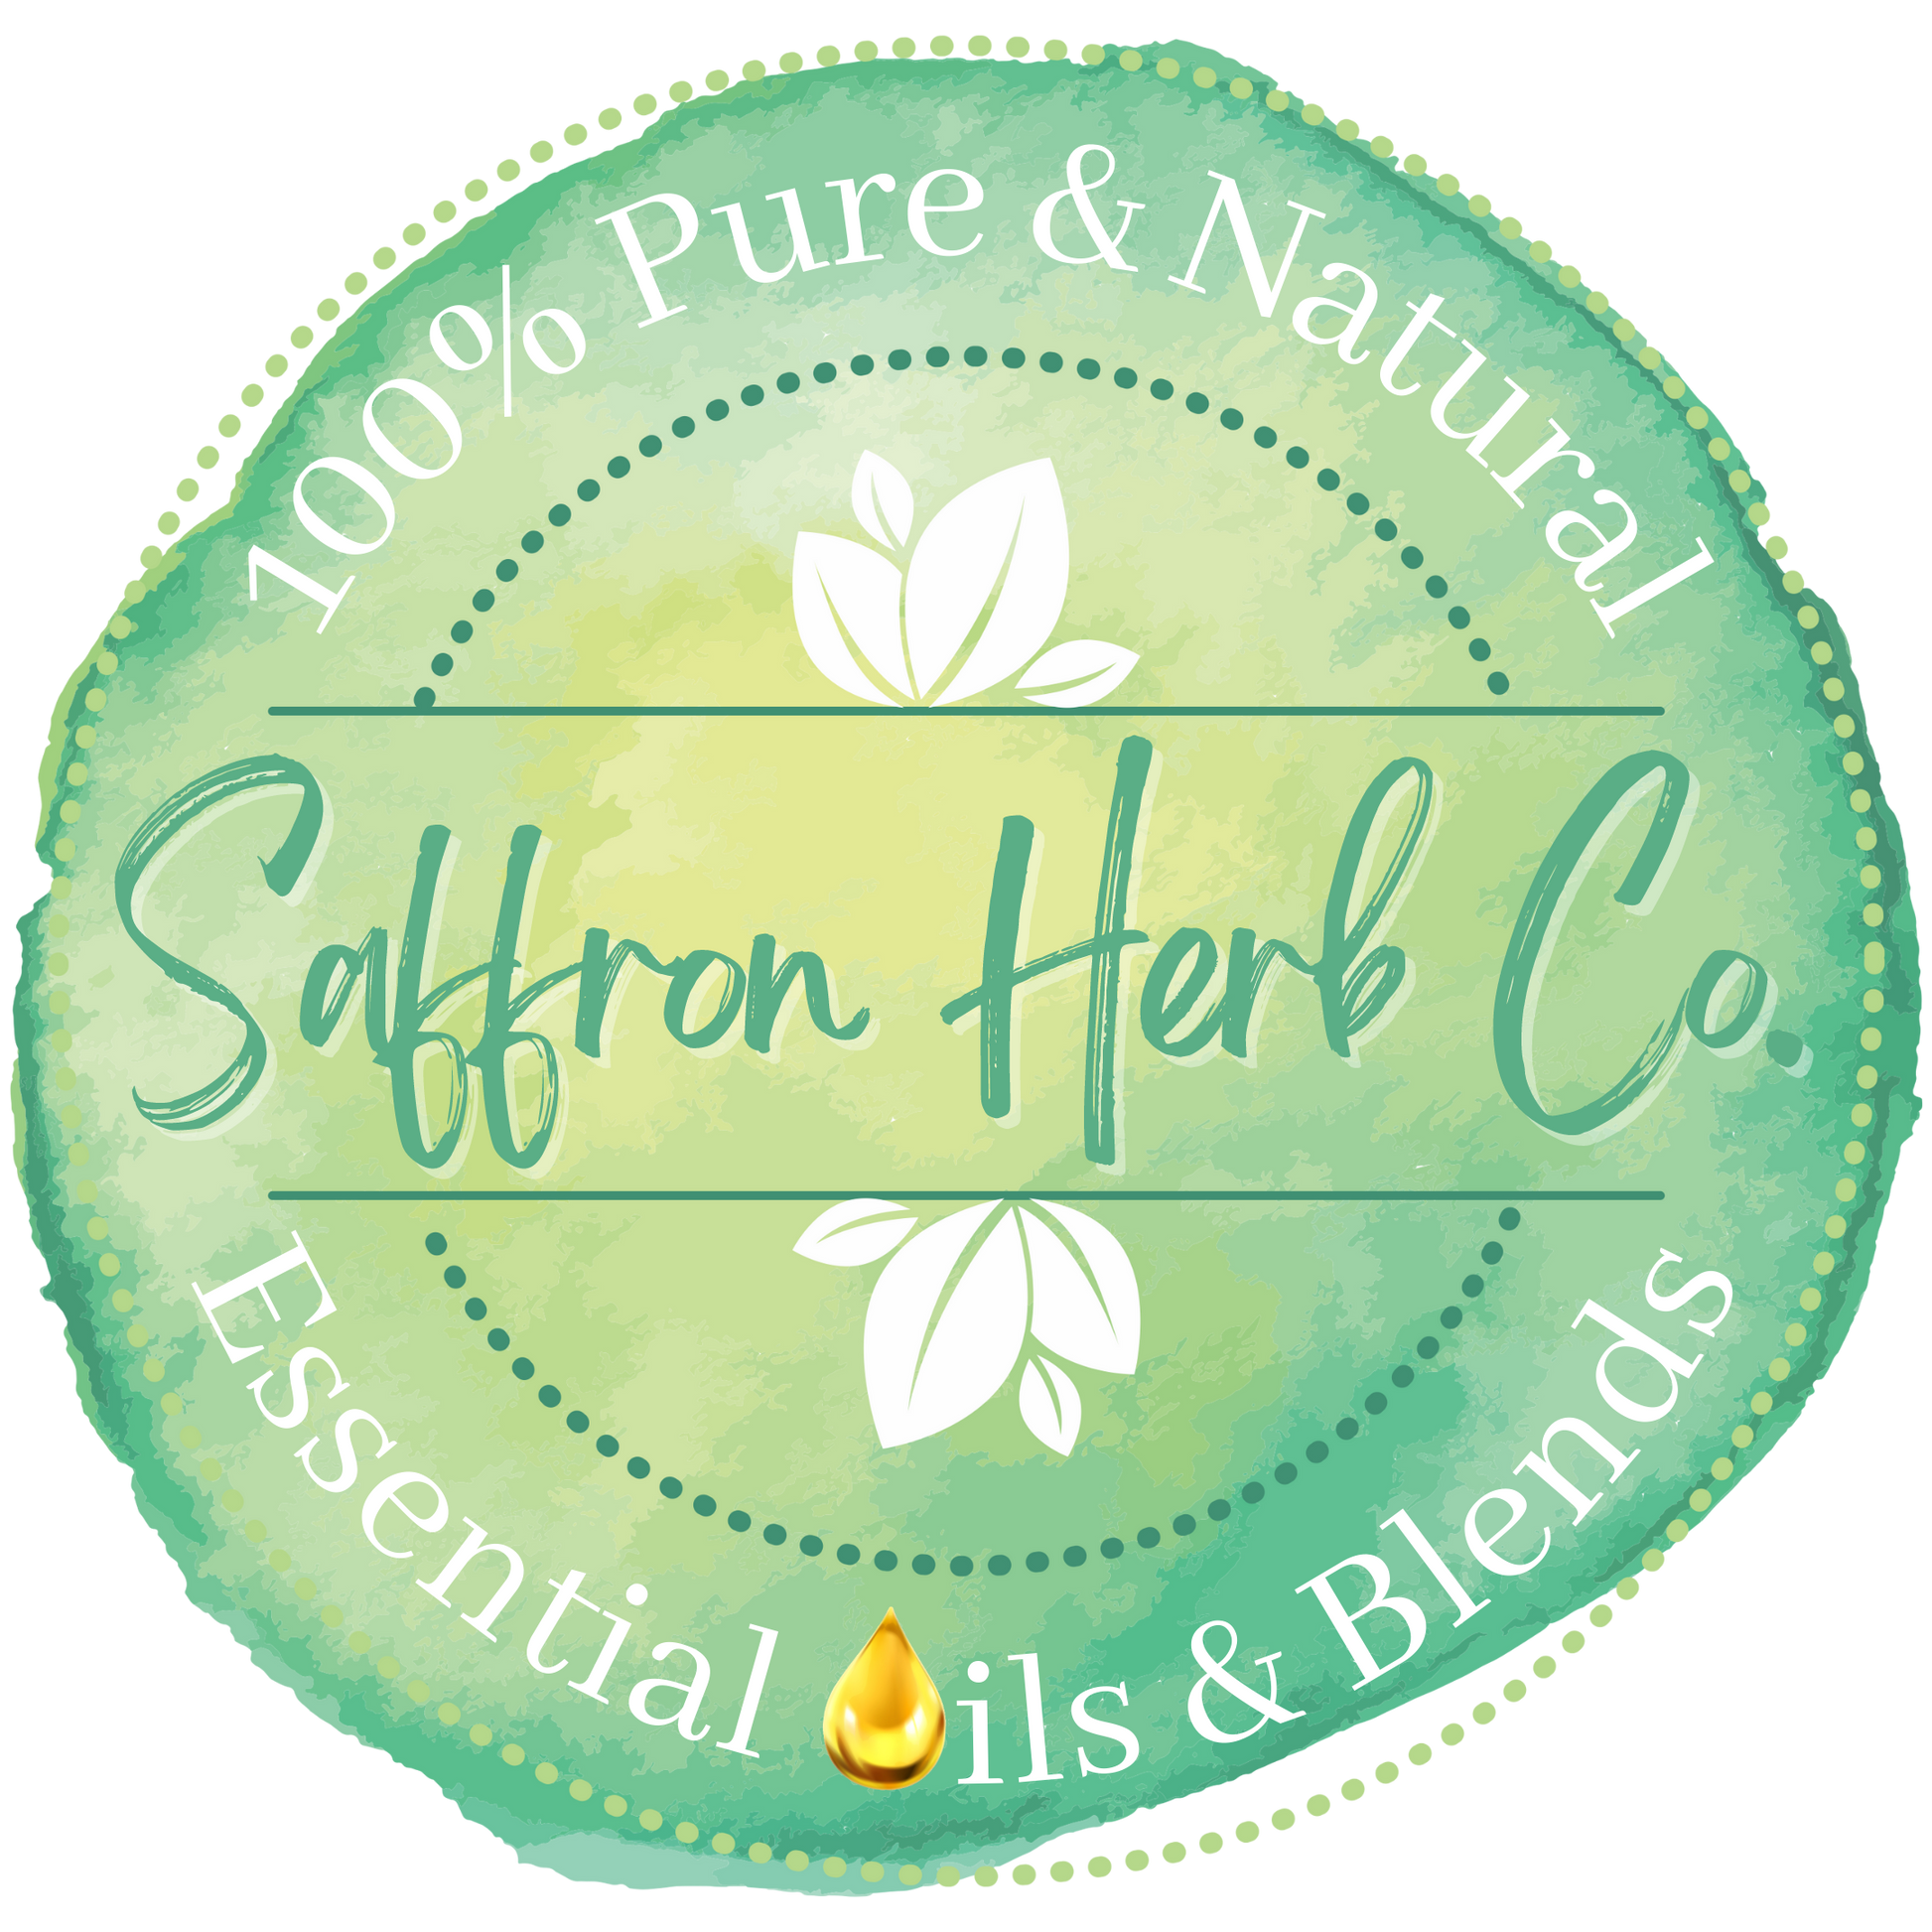 Patchouli Essential Oil – Saffron Herb Co.